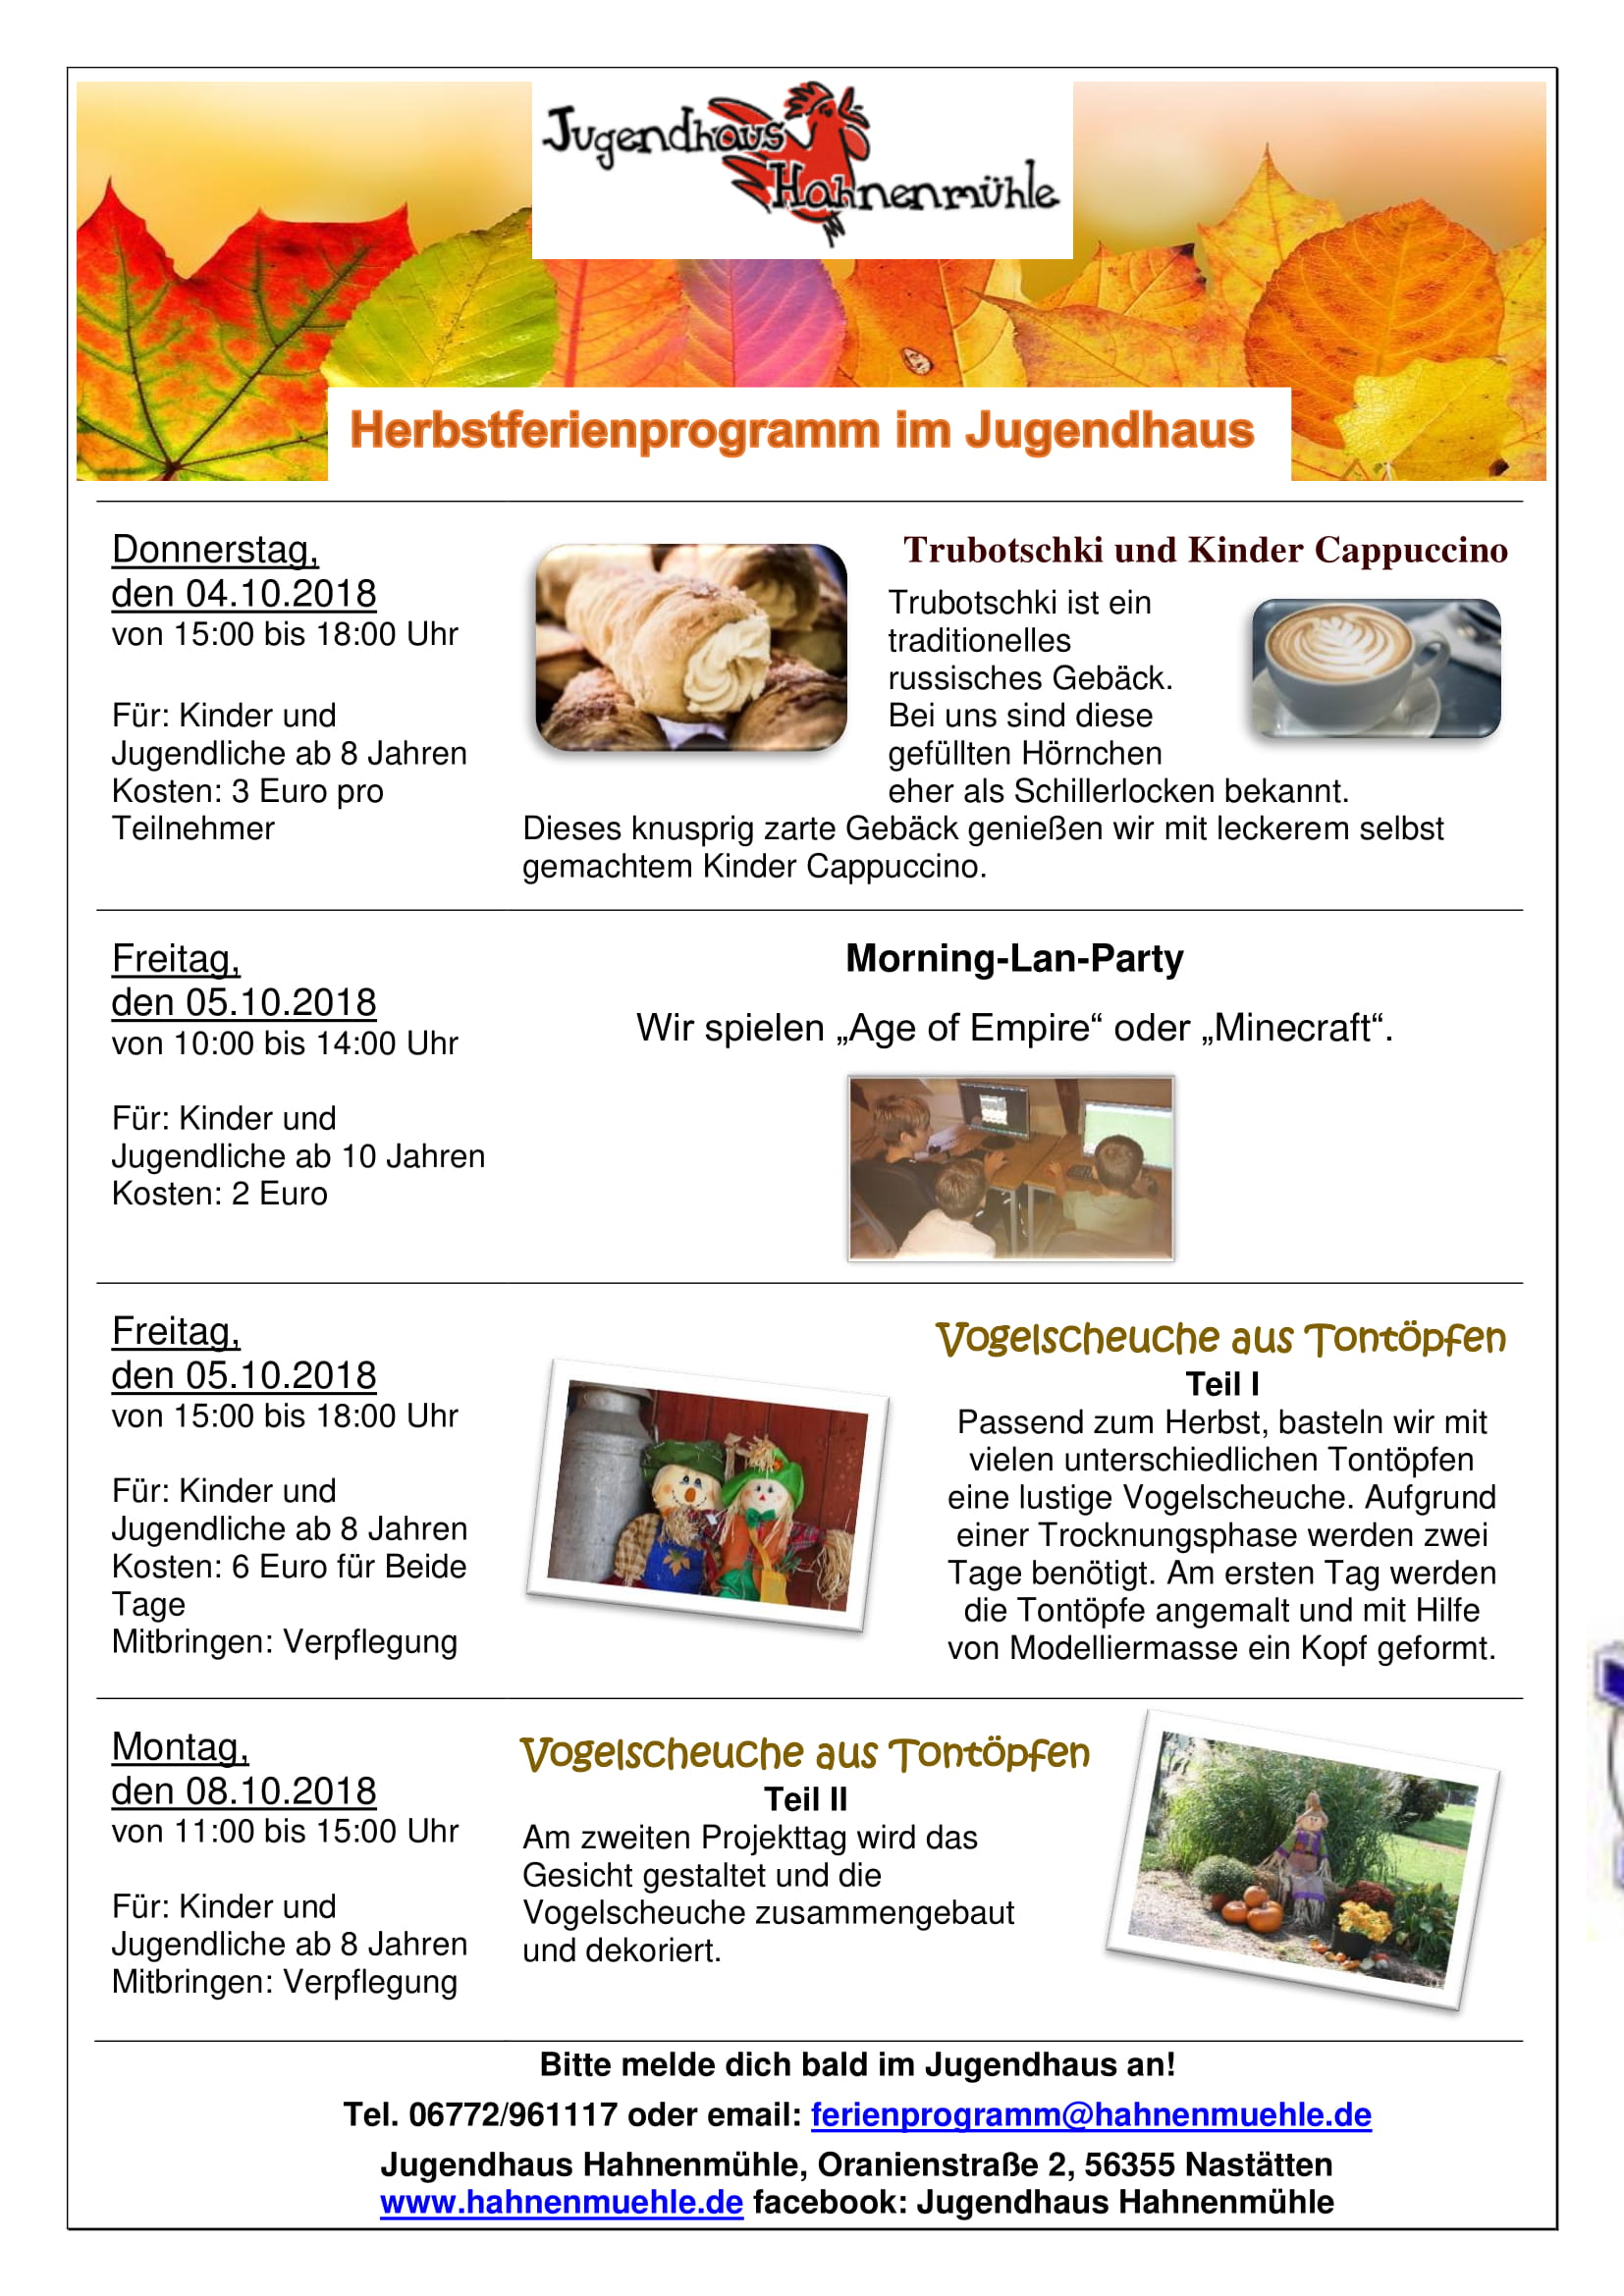 Herbstferienprogramm 2018 Jugendhaus Hahnenmühle